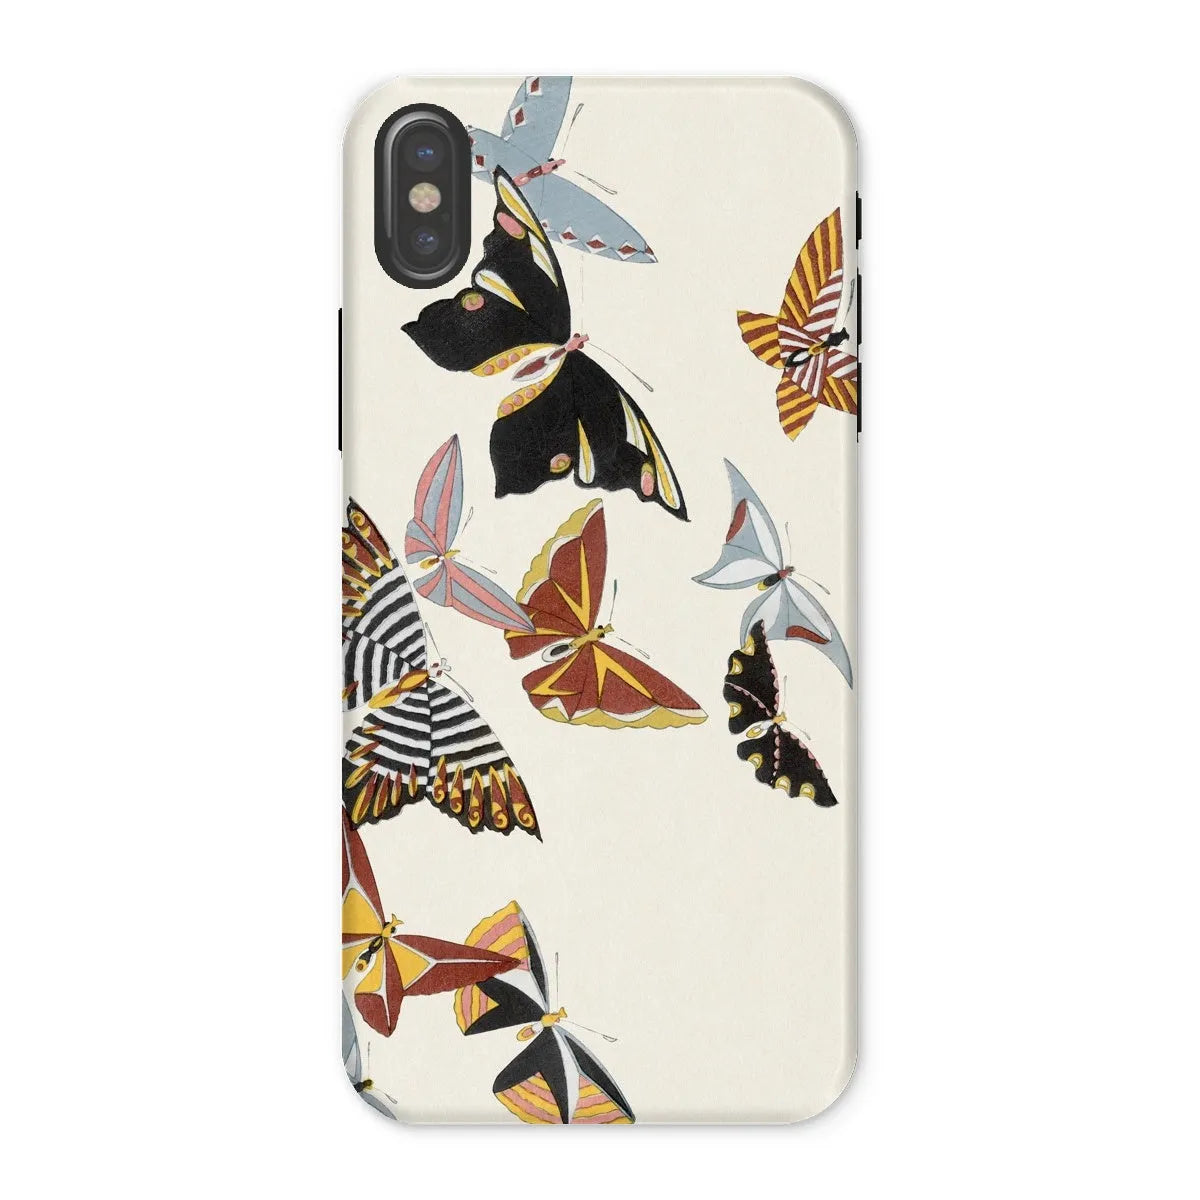 Japanese Butterfly Art Phone Case - Kamisaka Sekka - Iphone x / Matte - Mobile Phone Cases - Aesthetic Art